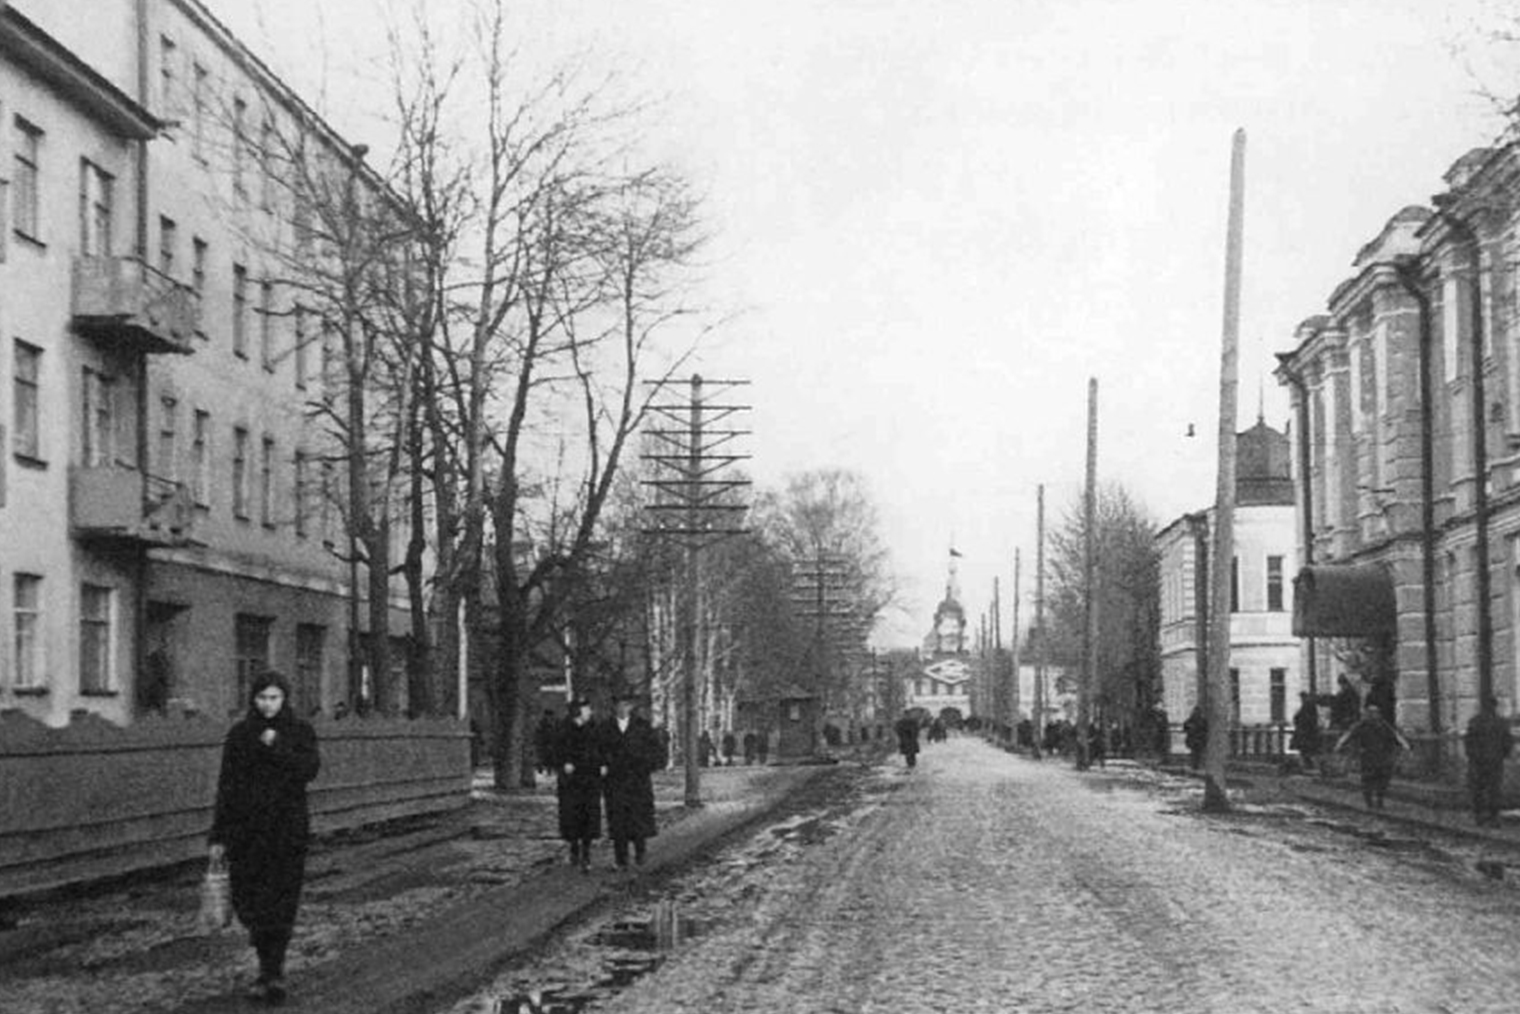 Довоенная жилая застройка на ул. Ленина, фото 1927 года. Источник: kolpino-city.narod.ru